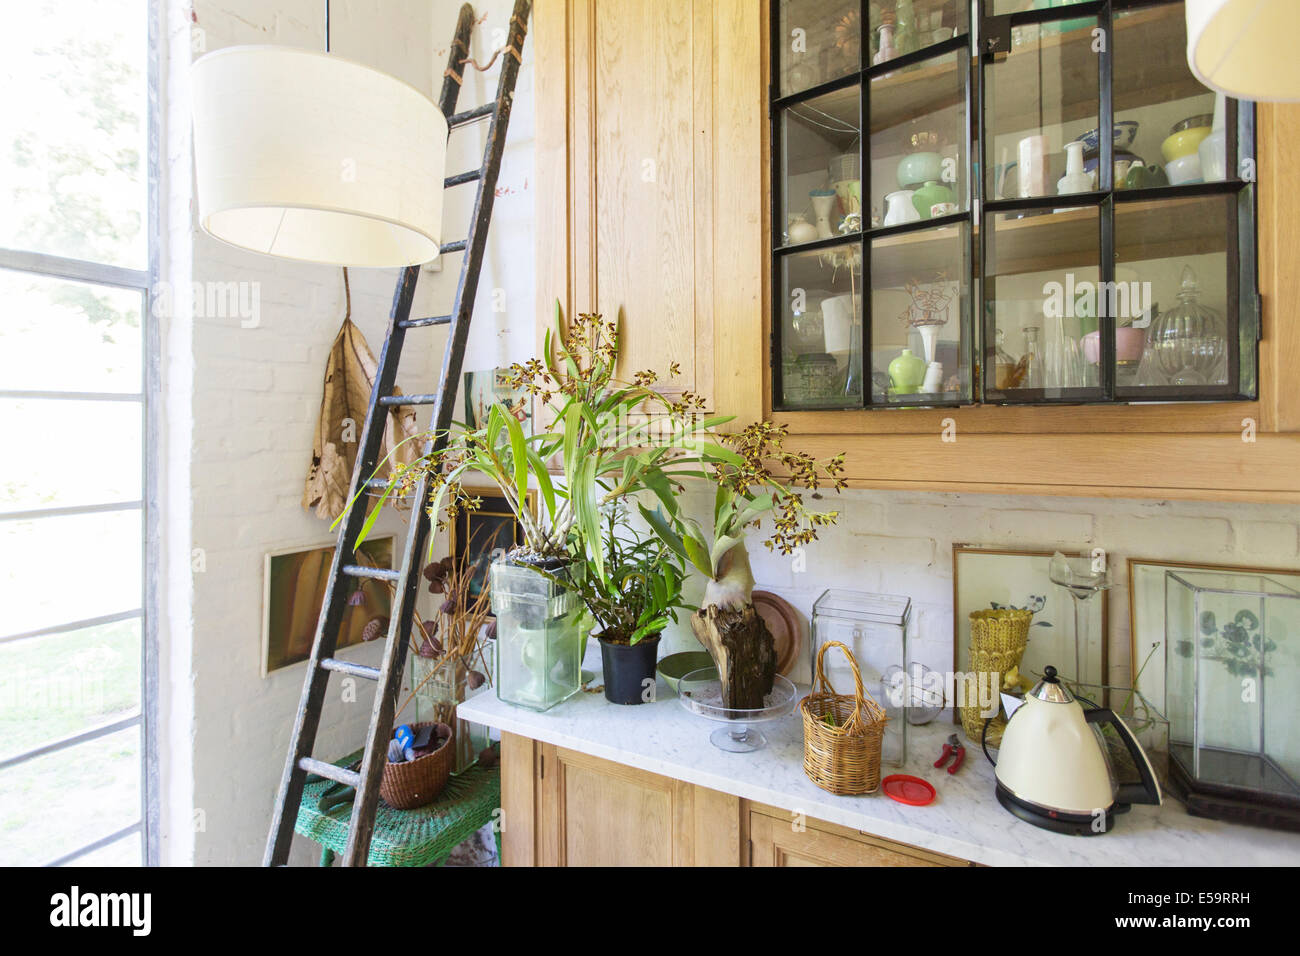 Leiter, Pflanzen und Schränke im Landhaus Stockfoto